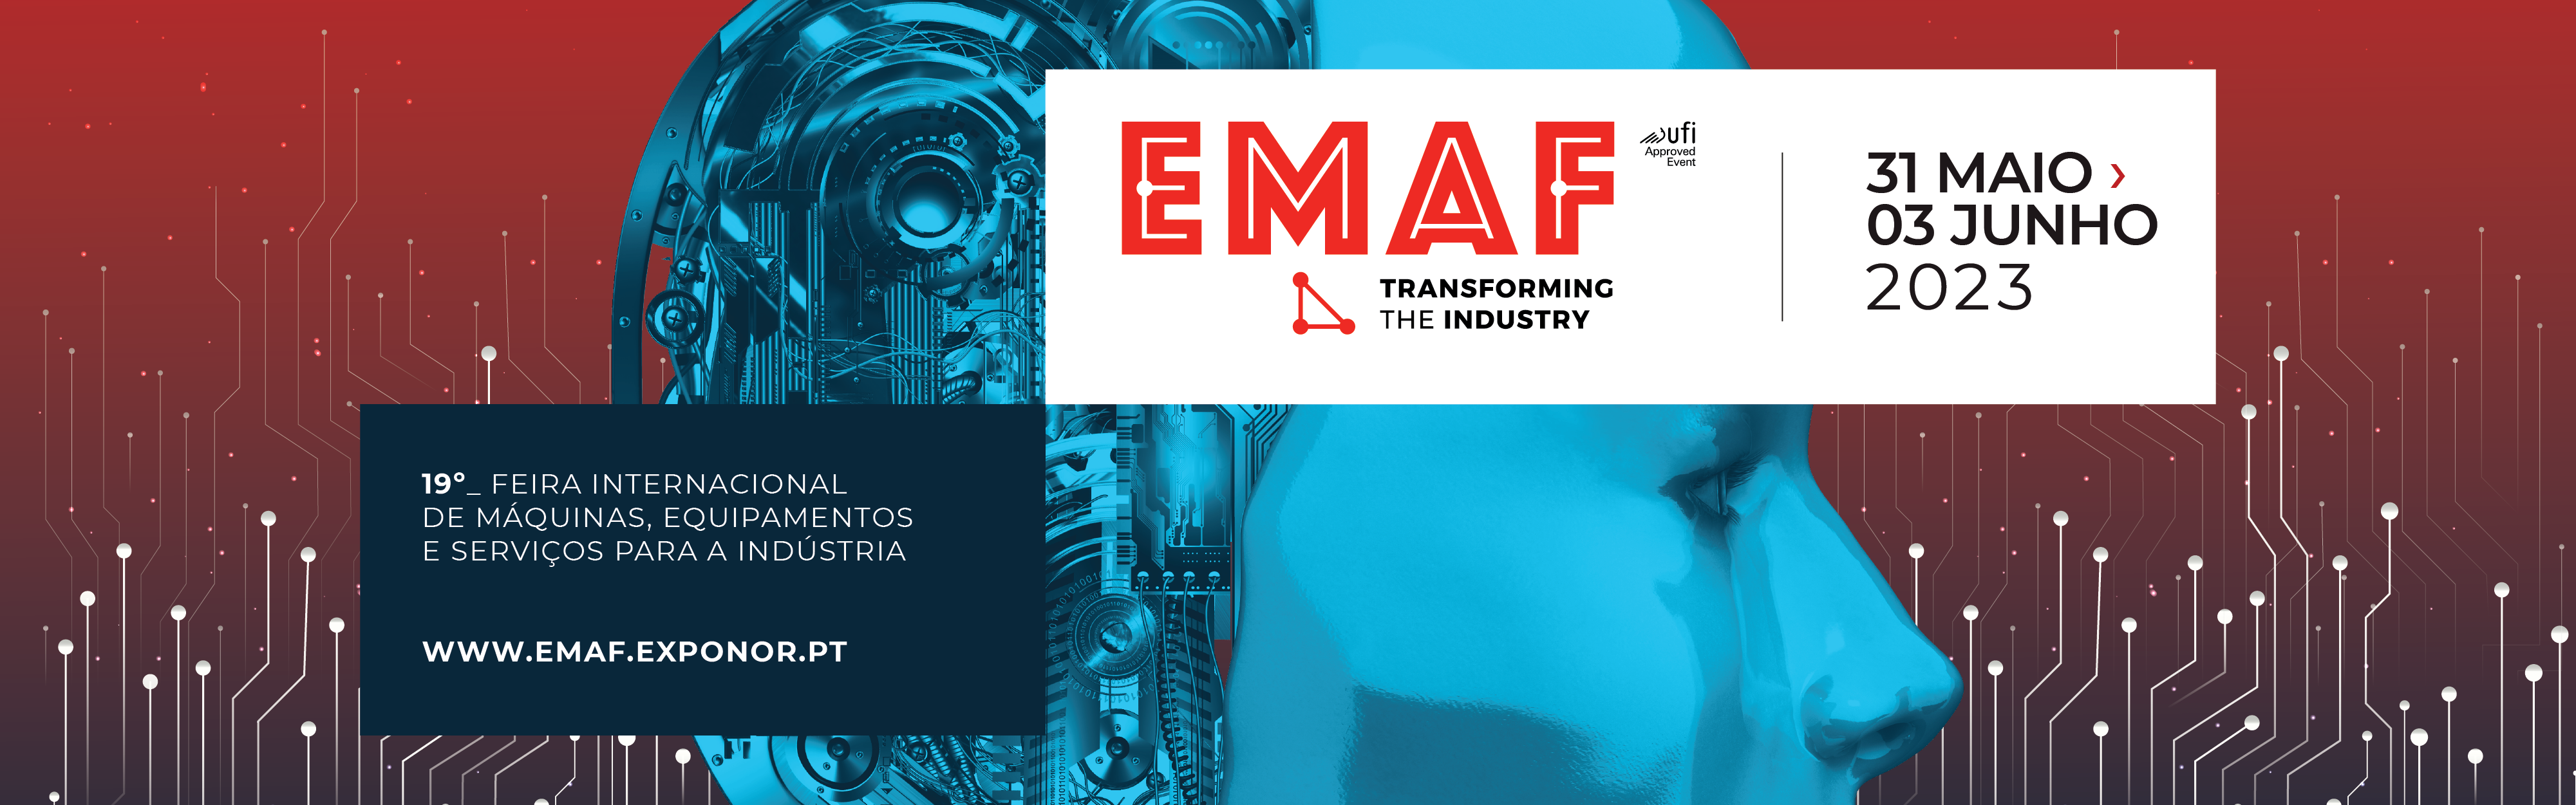 EMAF - Internationale Messe für Maschinen, Ausstattung und Dienstleistungen für die Industrie